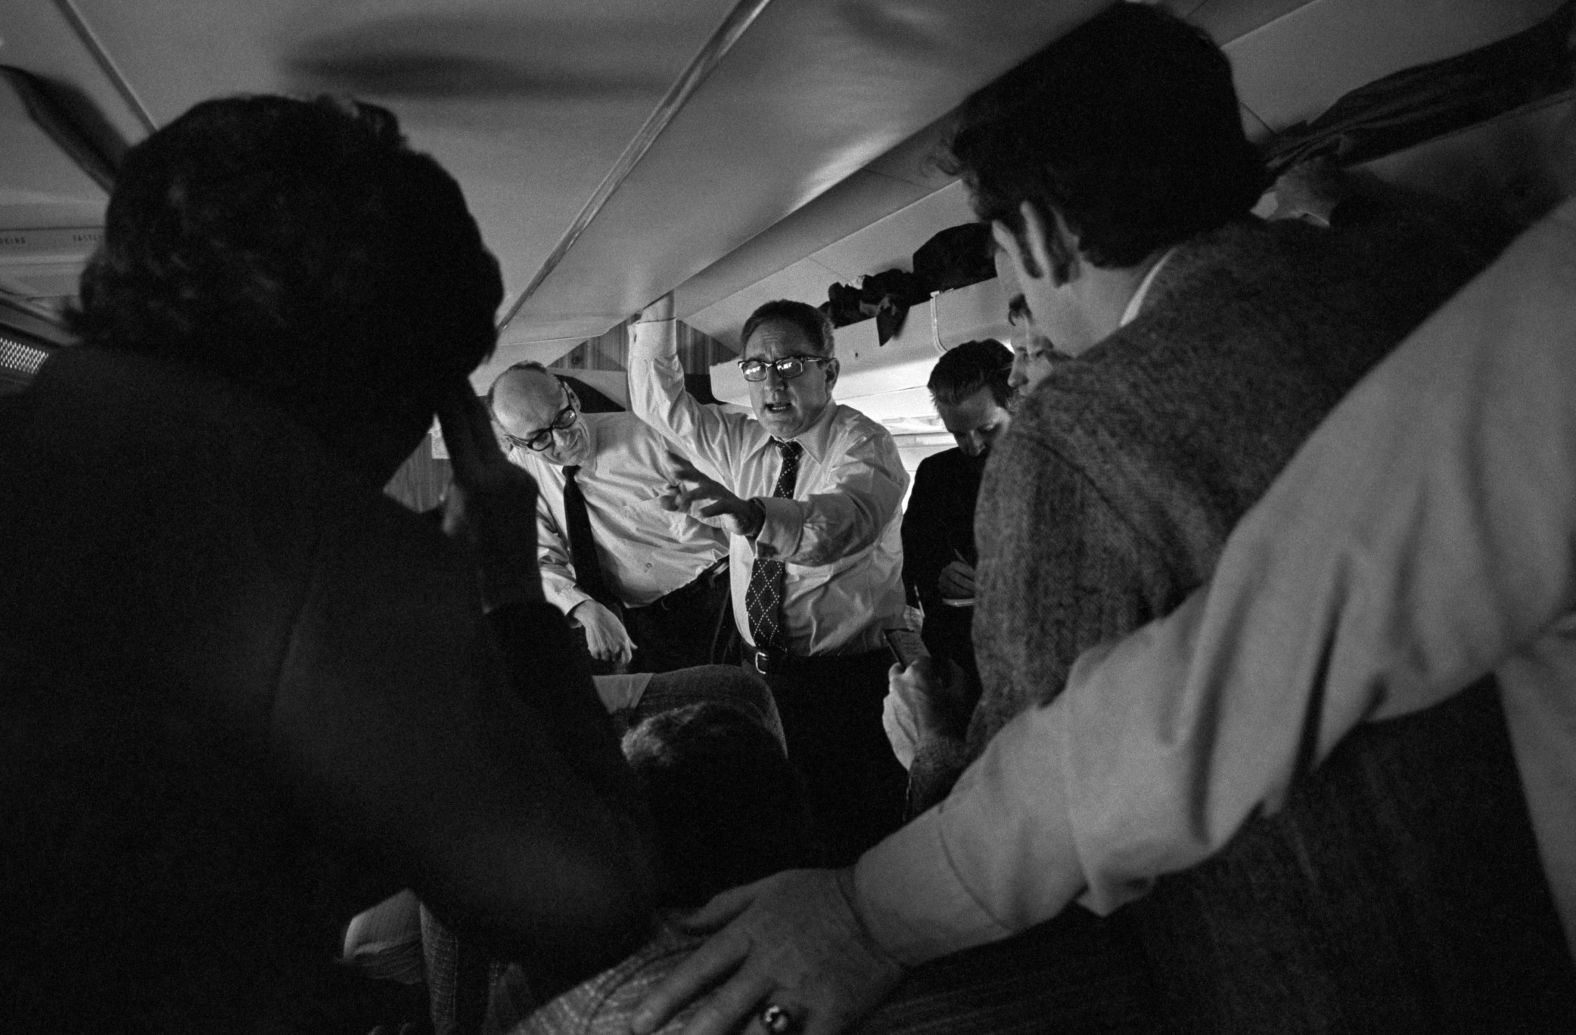 هنری کسینجر و ریچارد نیکسون در اتاق بیضی شکل روسای جمهوری آمریکا-فوریه 1971